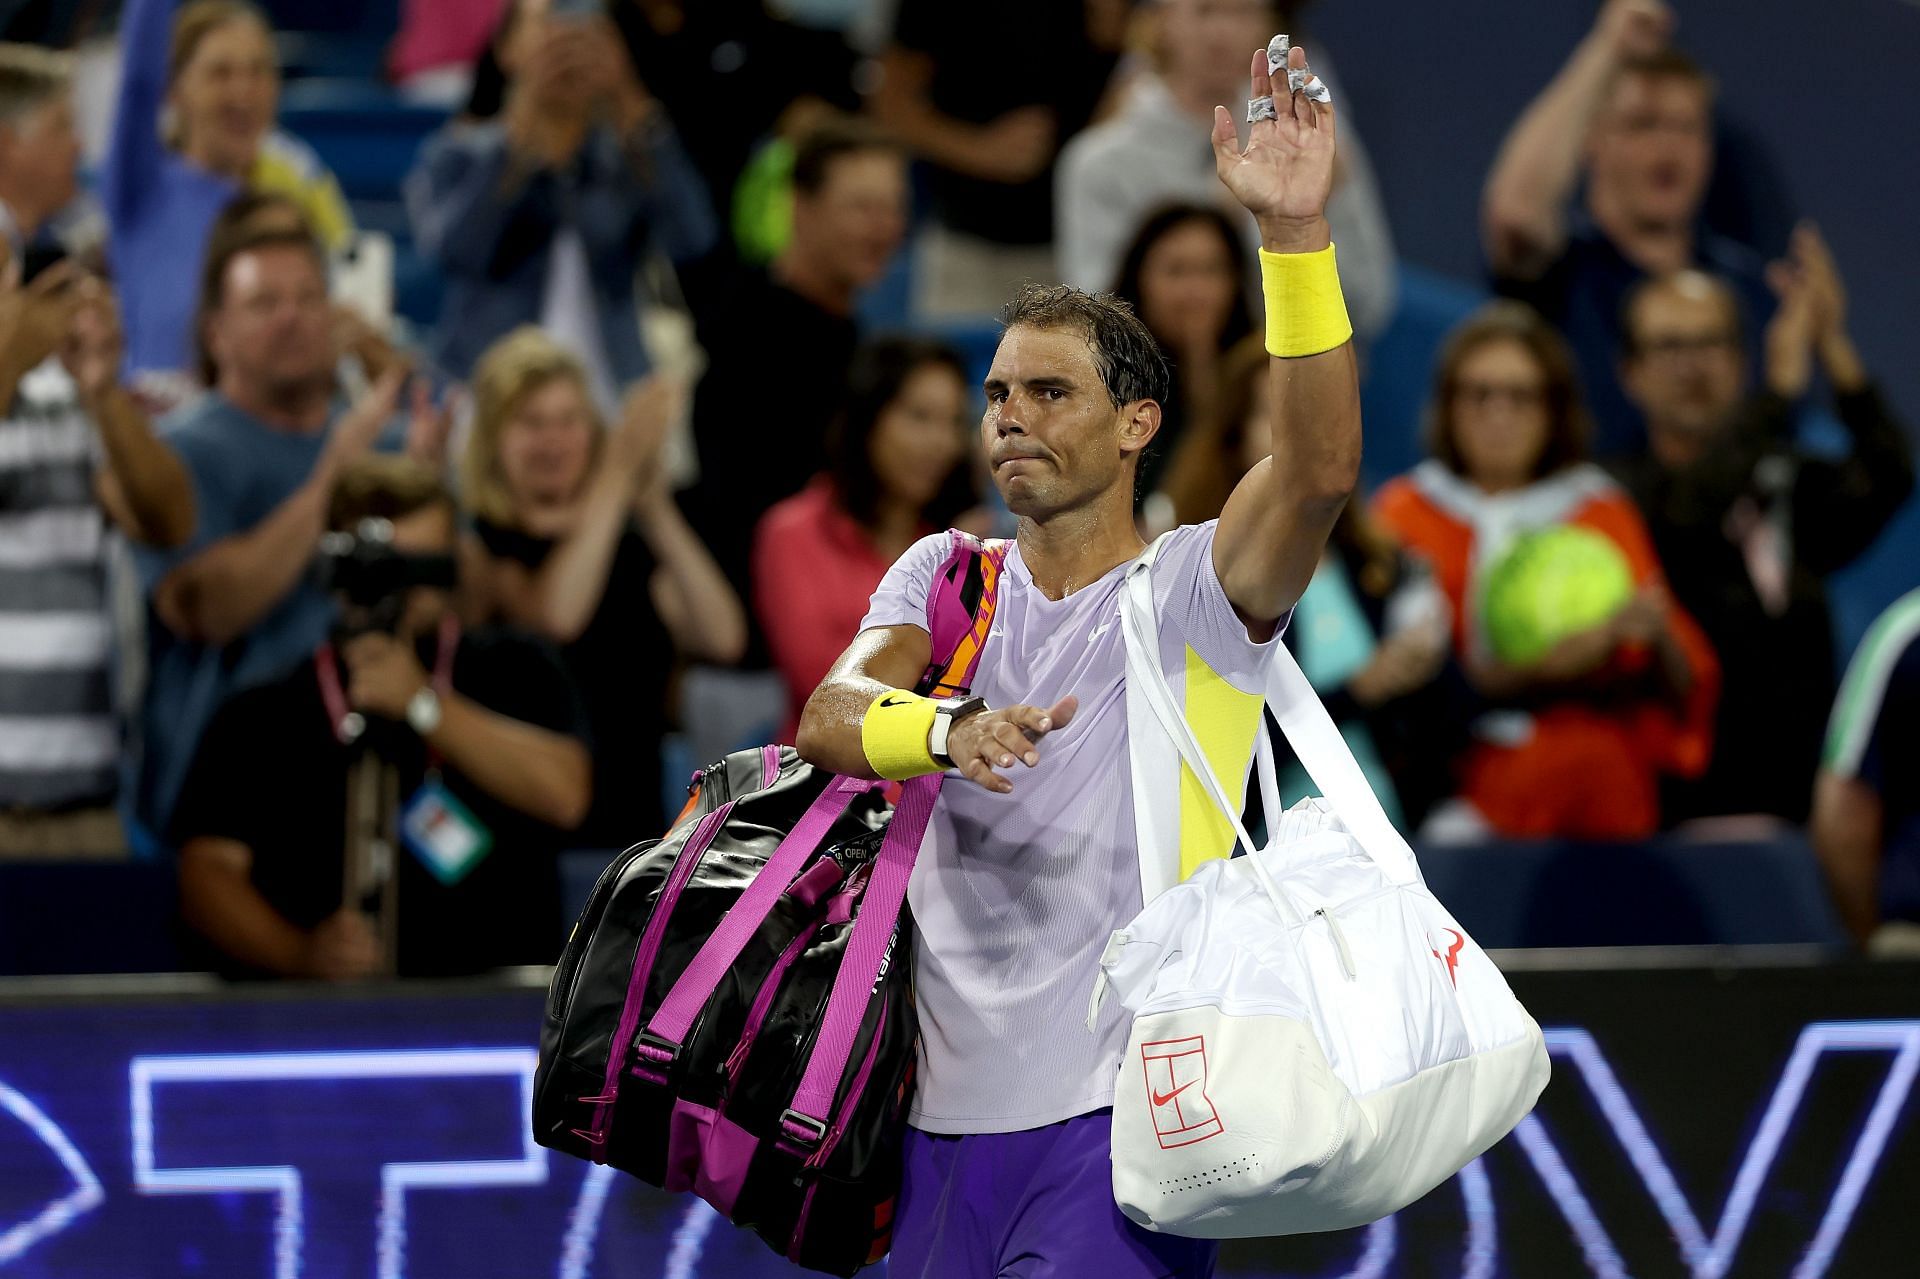 Rafael Nadal lost his opener at the Cincinnati Open against Borna Coric